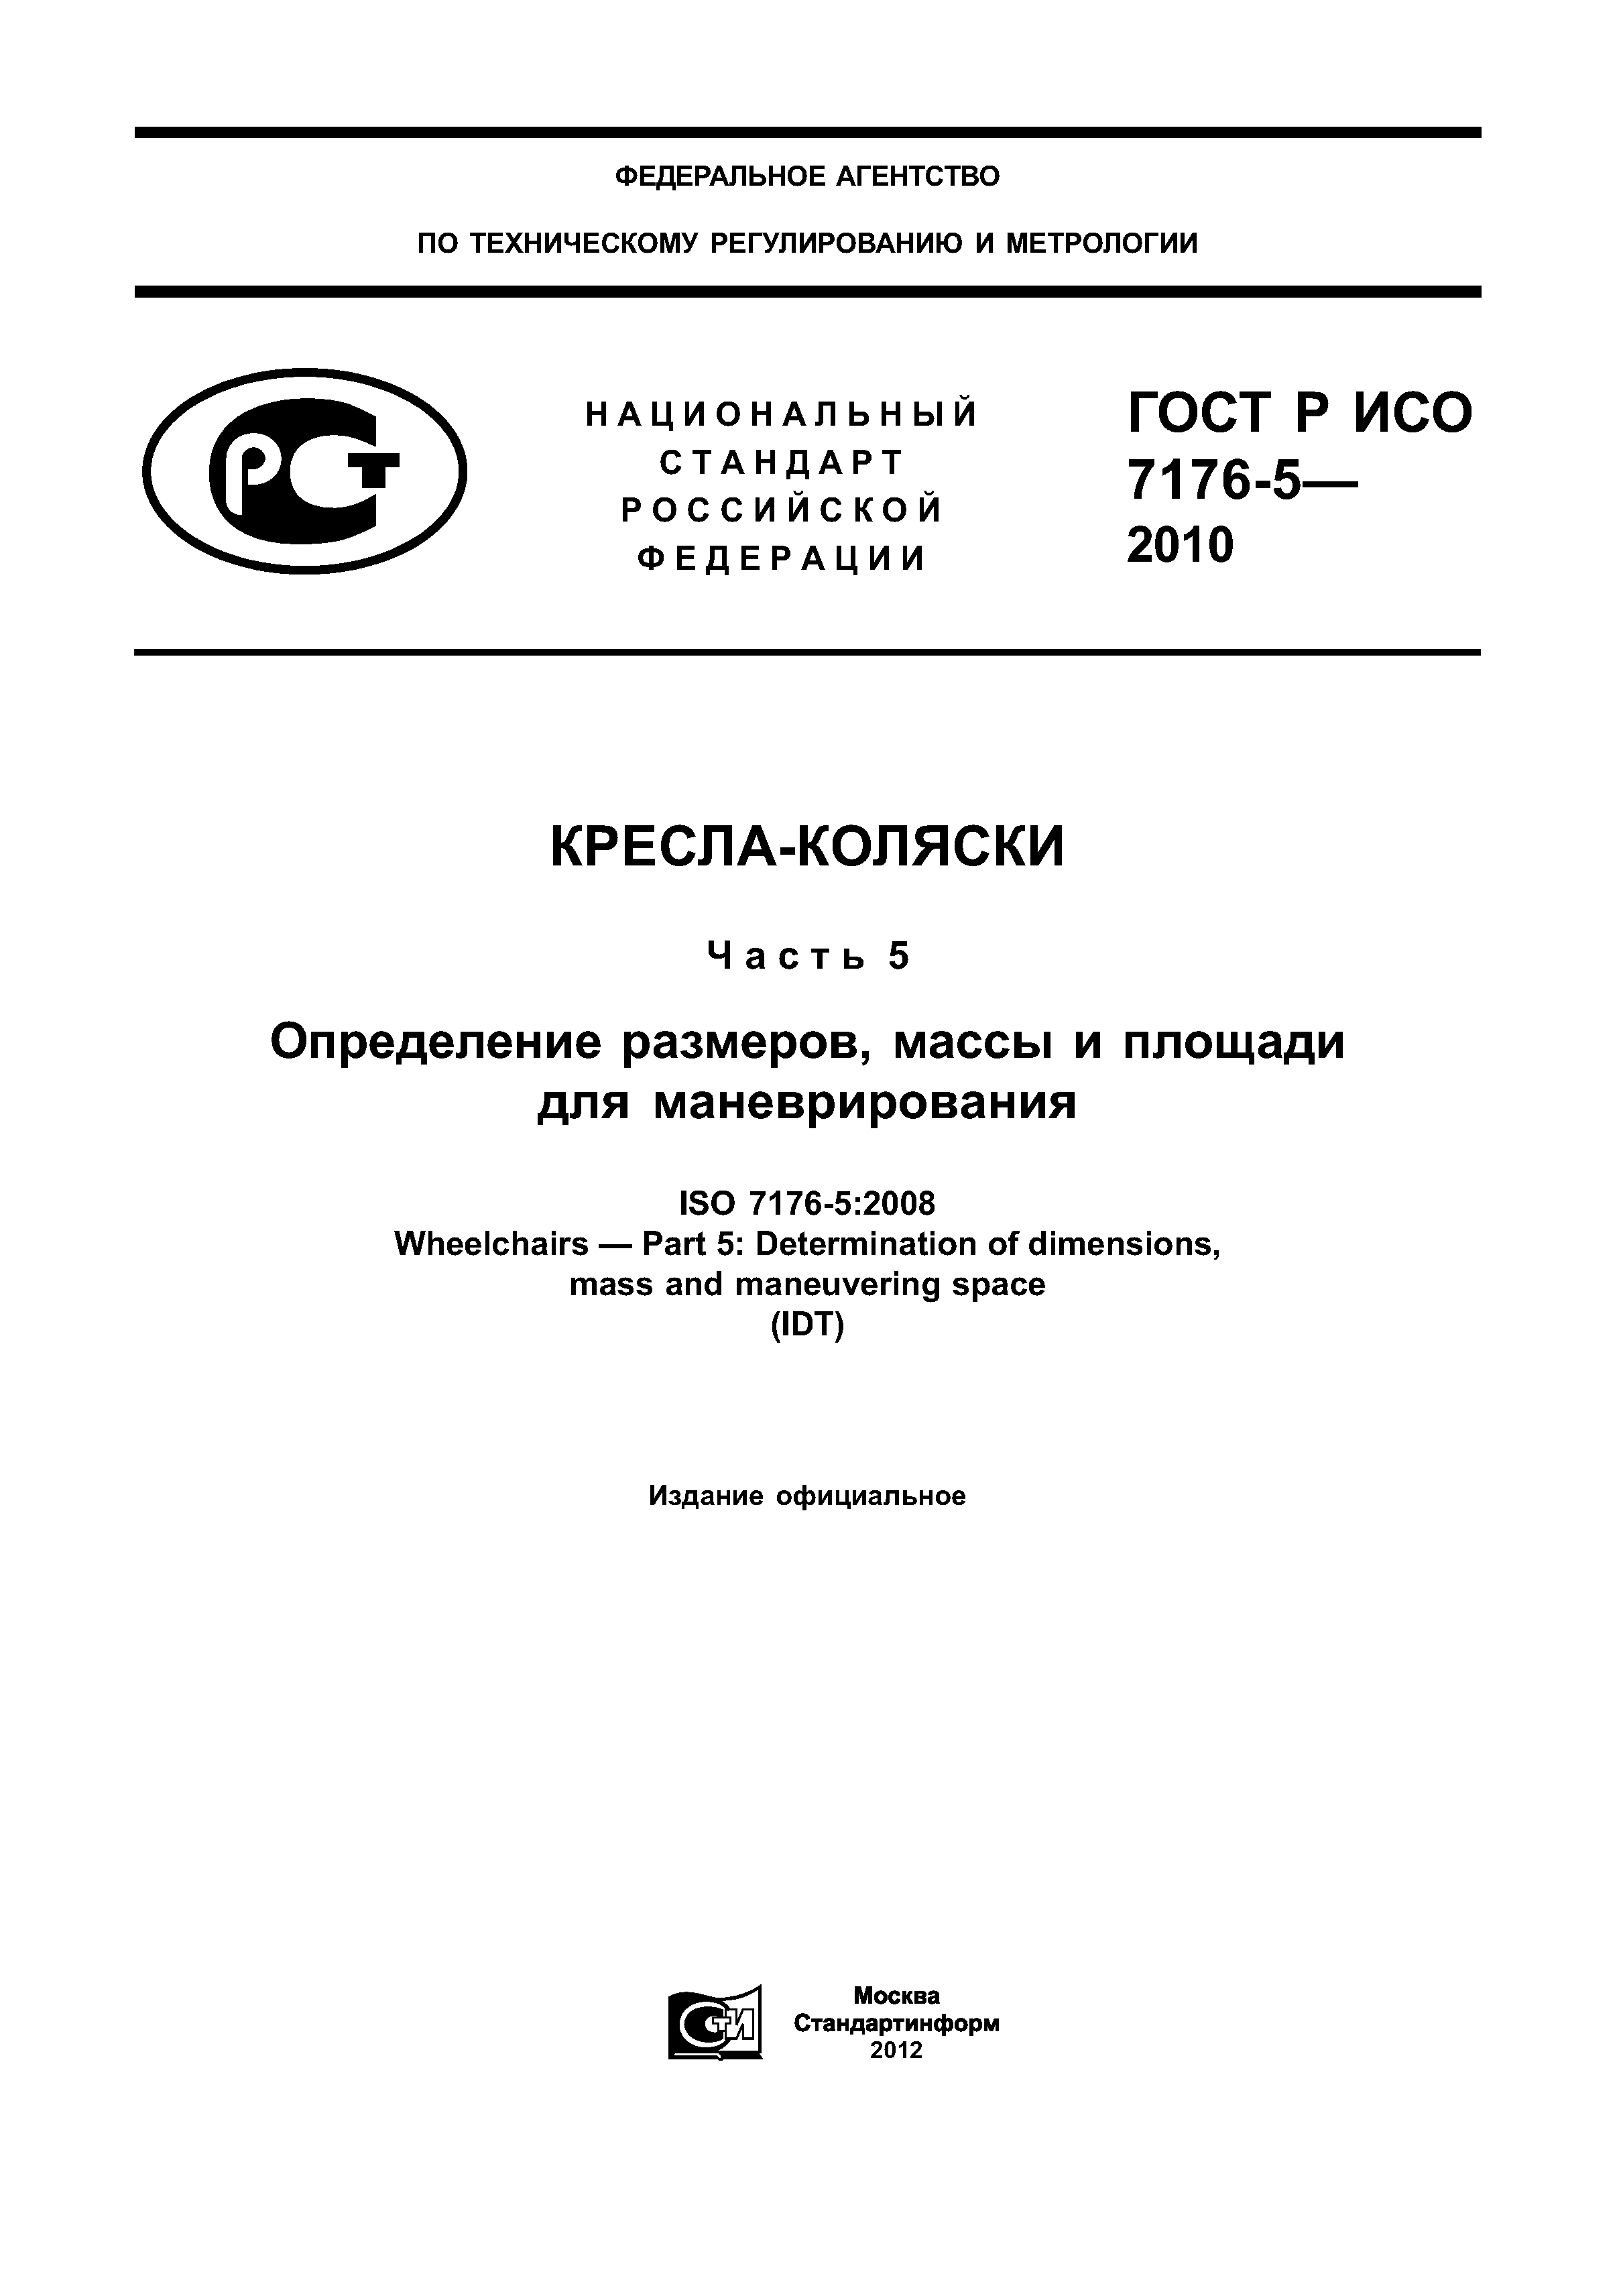 ГОСТ Р ИСО 7176-5-2010